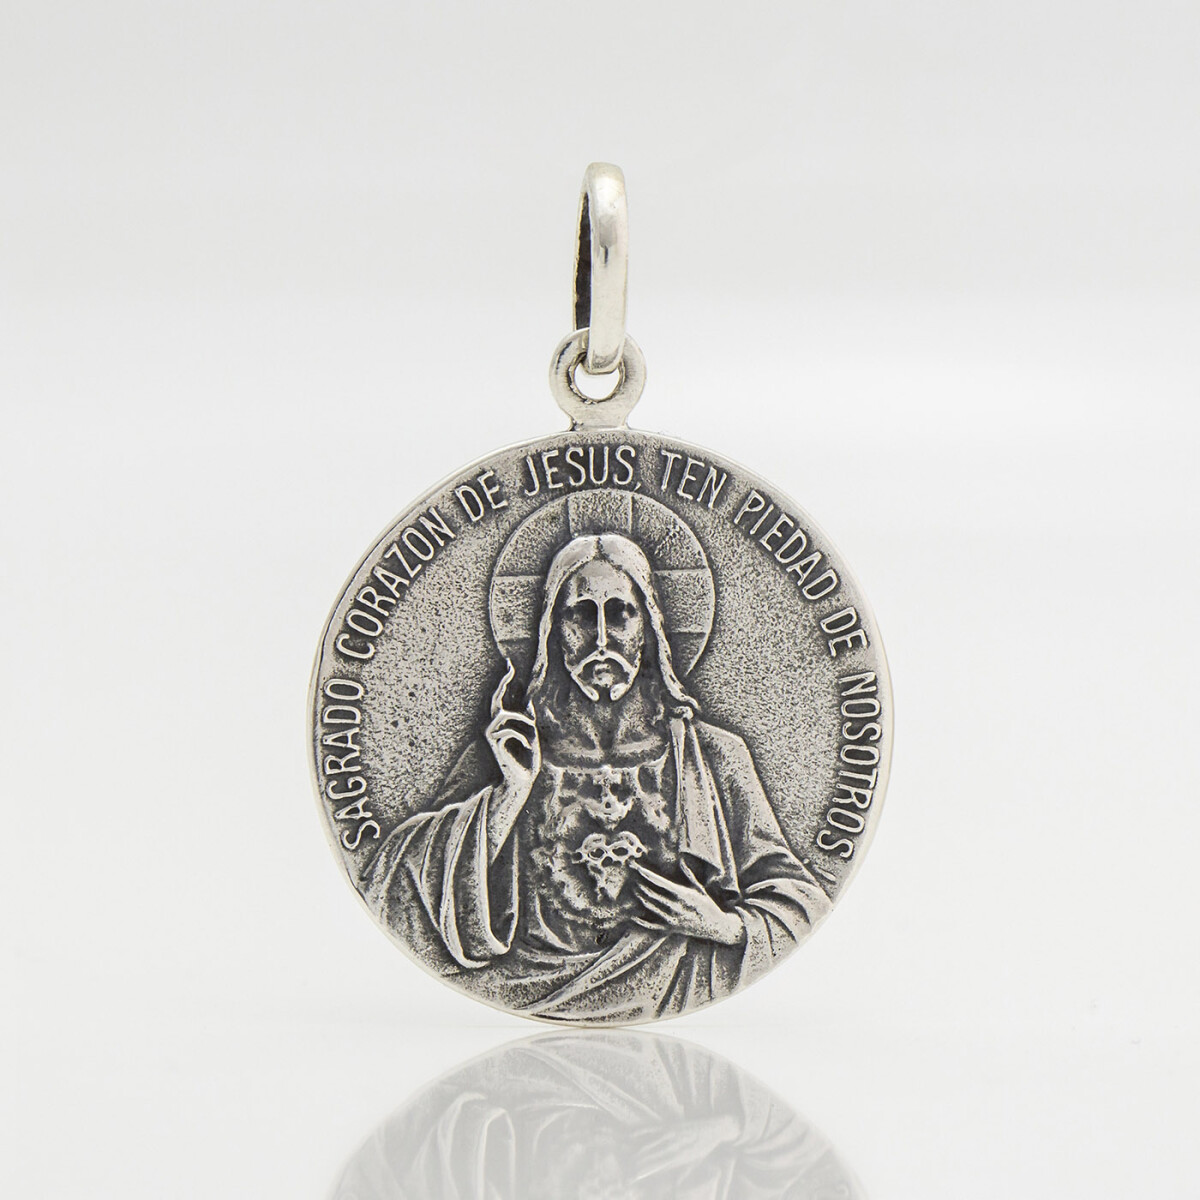 Medalla religiosa escapulario (sagrado corazón y virgen del carmen) de plata 925. 